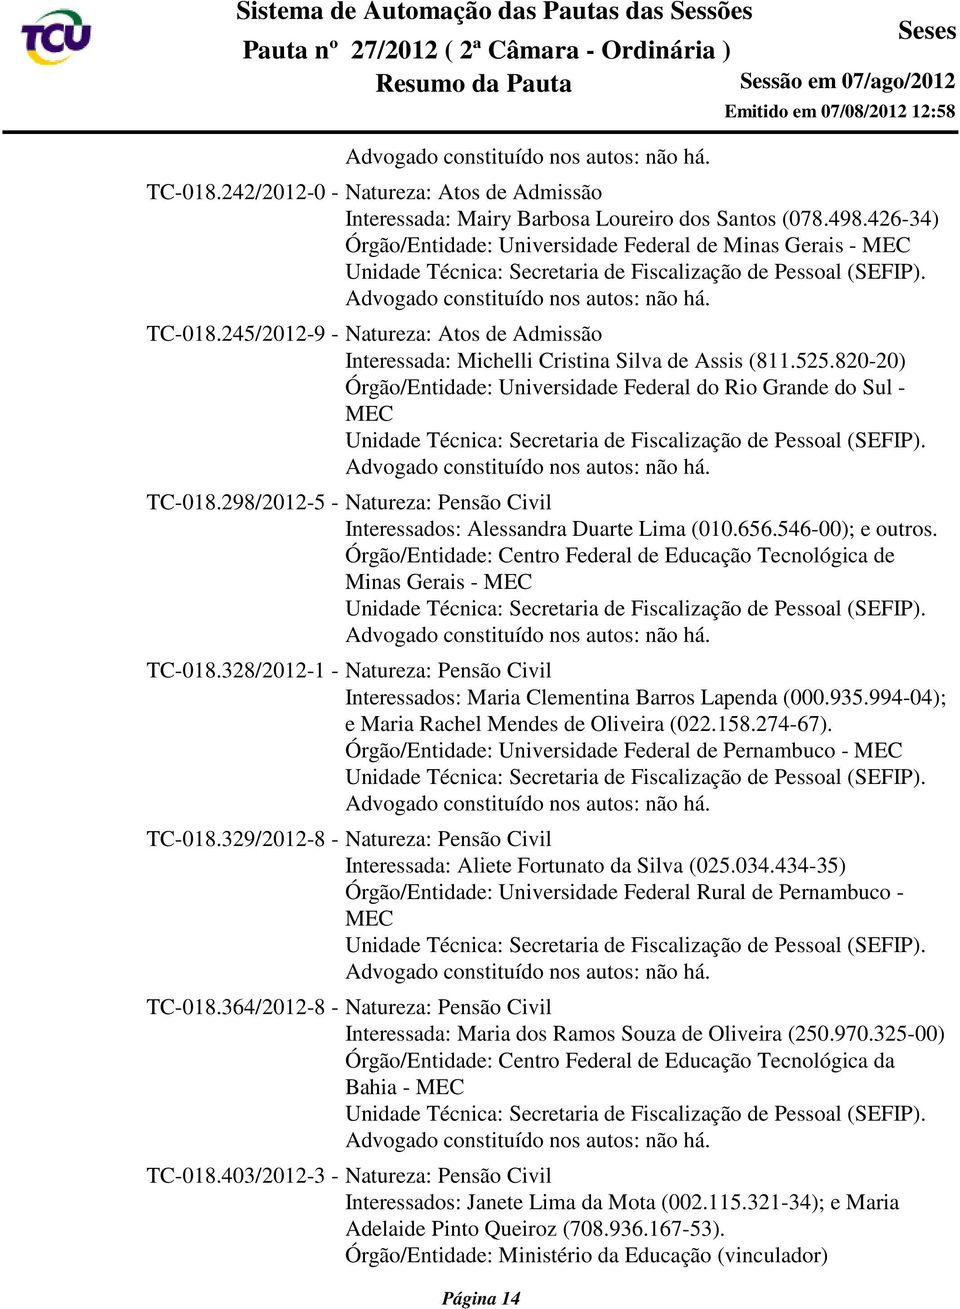 298/2012-5 - Natureza: Pensão Civil Interessados: Alessandra Duarte Lima (010.656.546-00); e outros. Órgão/Entidade: Centro Federal de Educação Tecnológica de Minas Gerais - MEC TC-018.